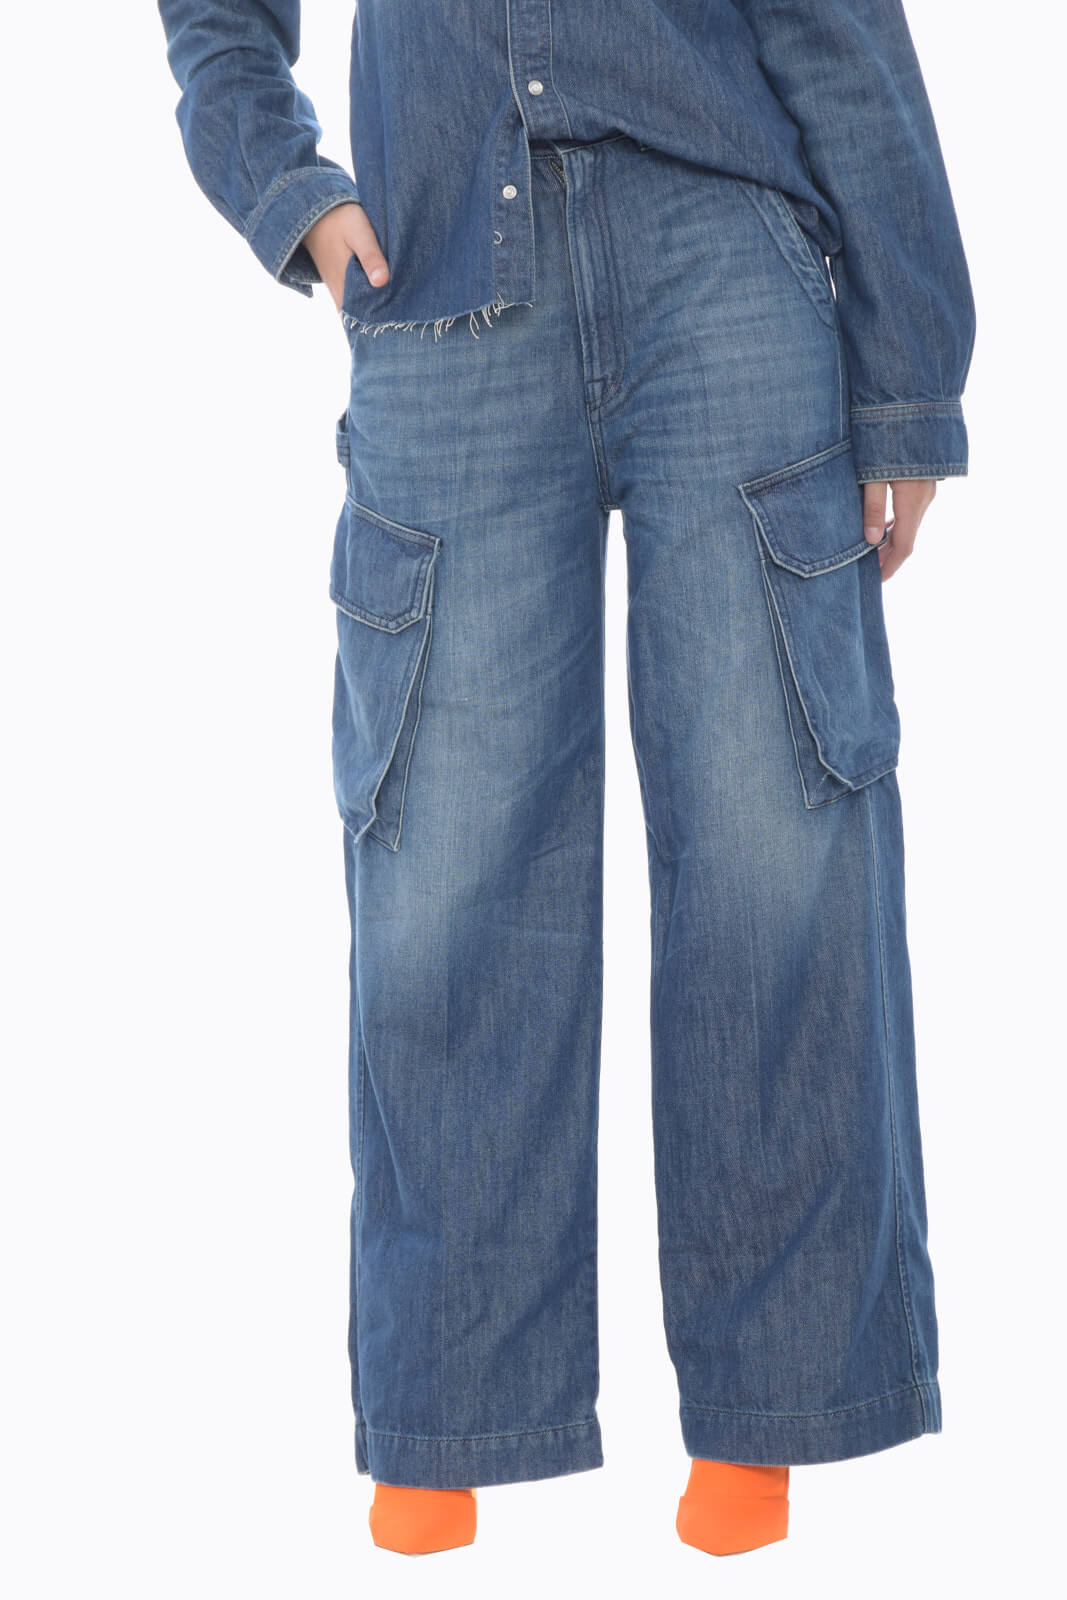 People Jeans Women HILARY